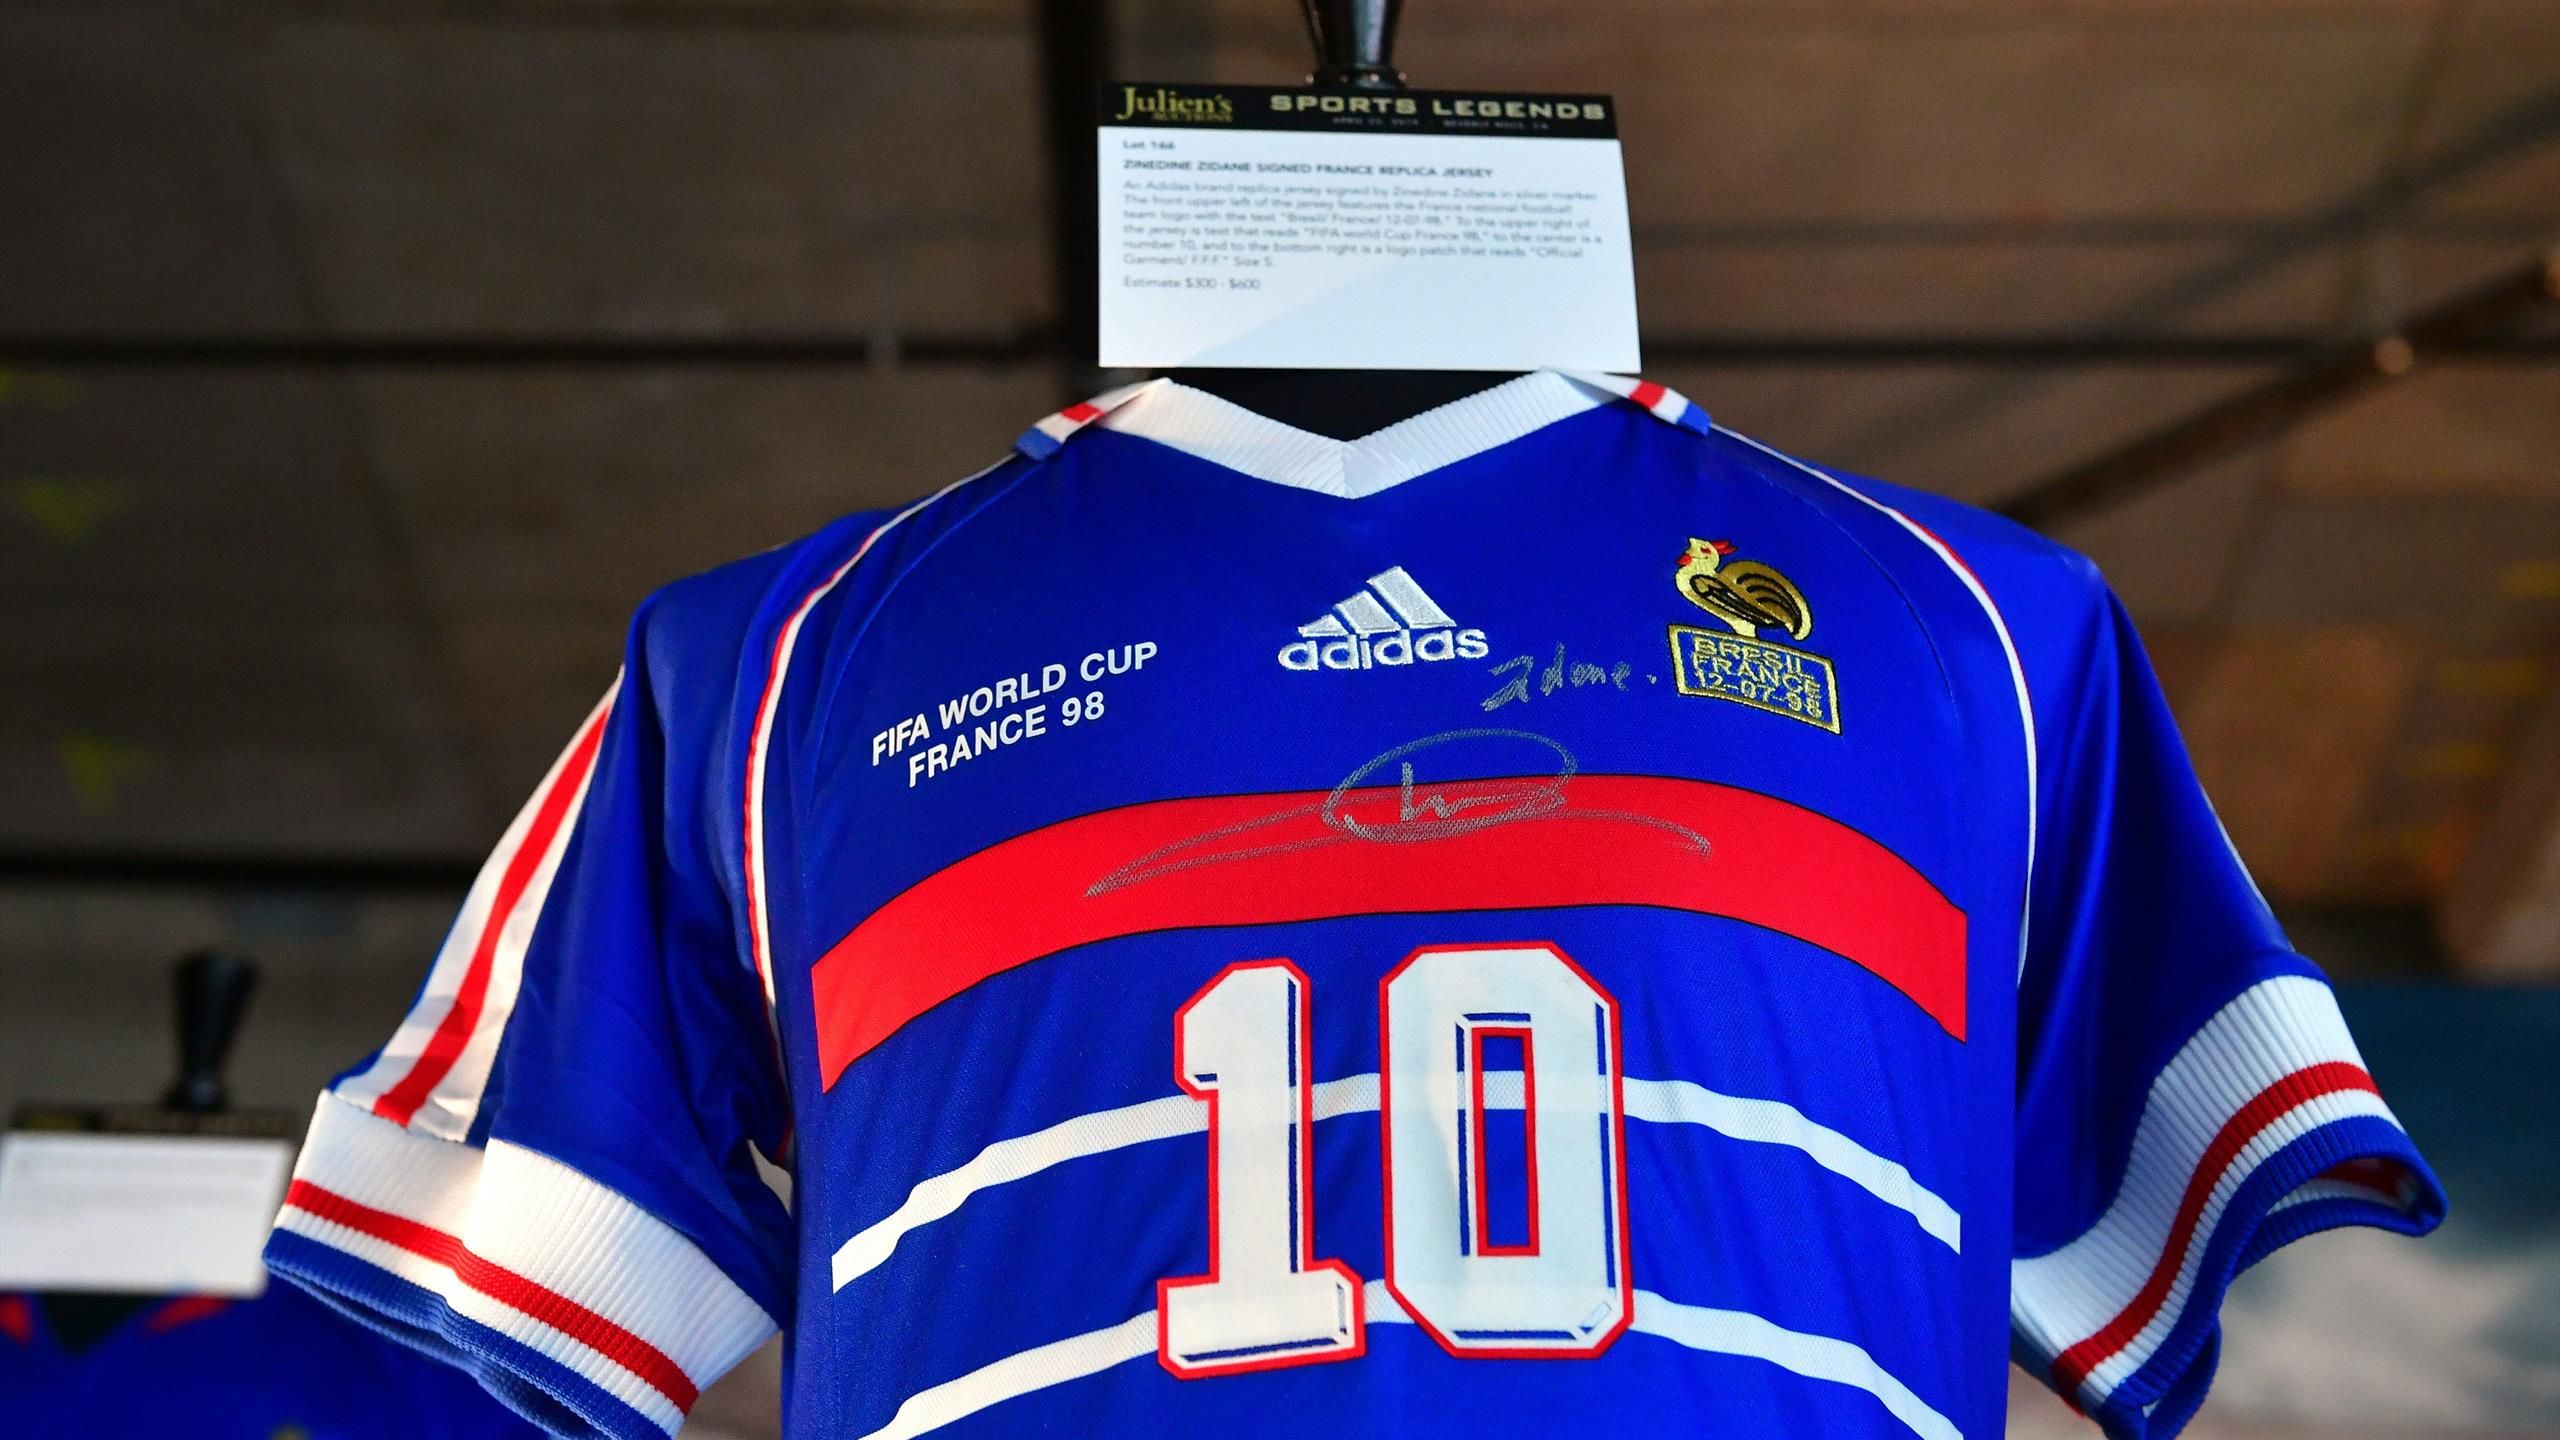 maillot de Zidane pour France-Brésil 98 vendu à plus de 100 000 dollars aux enchères - Eurosport